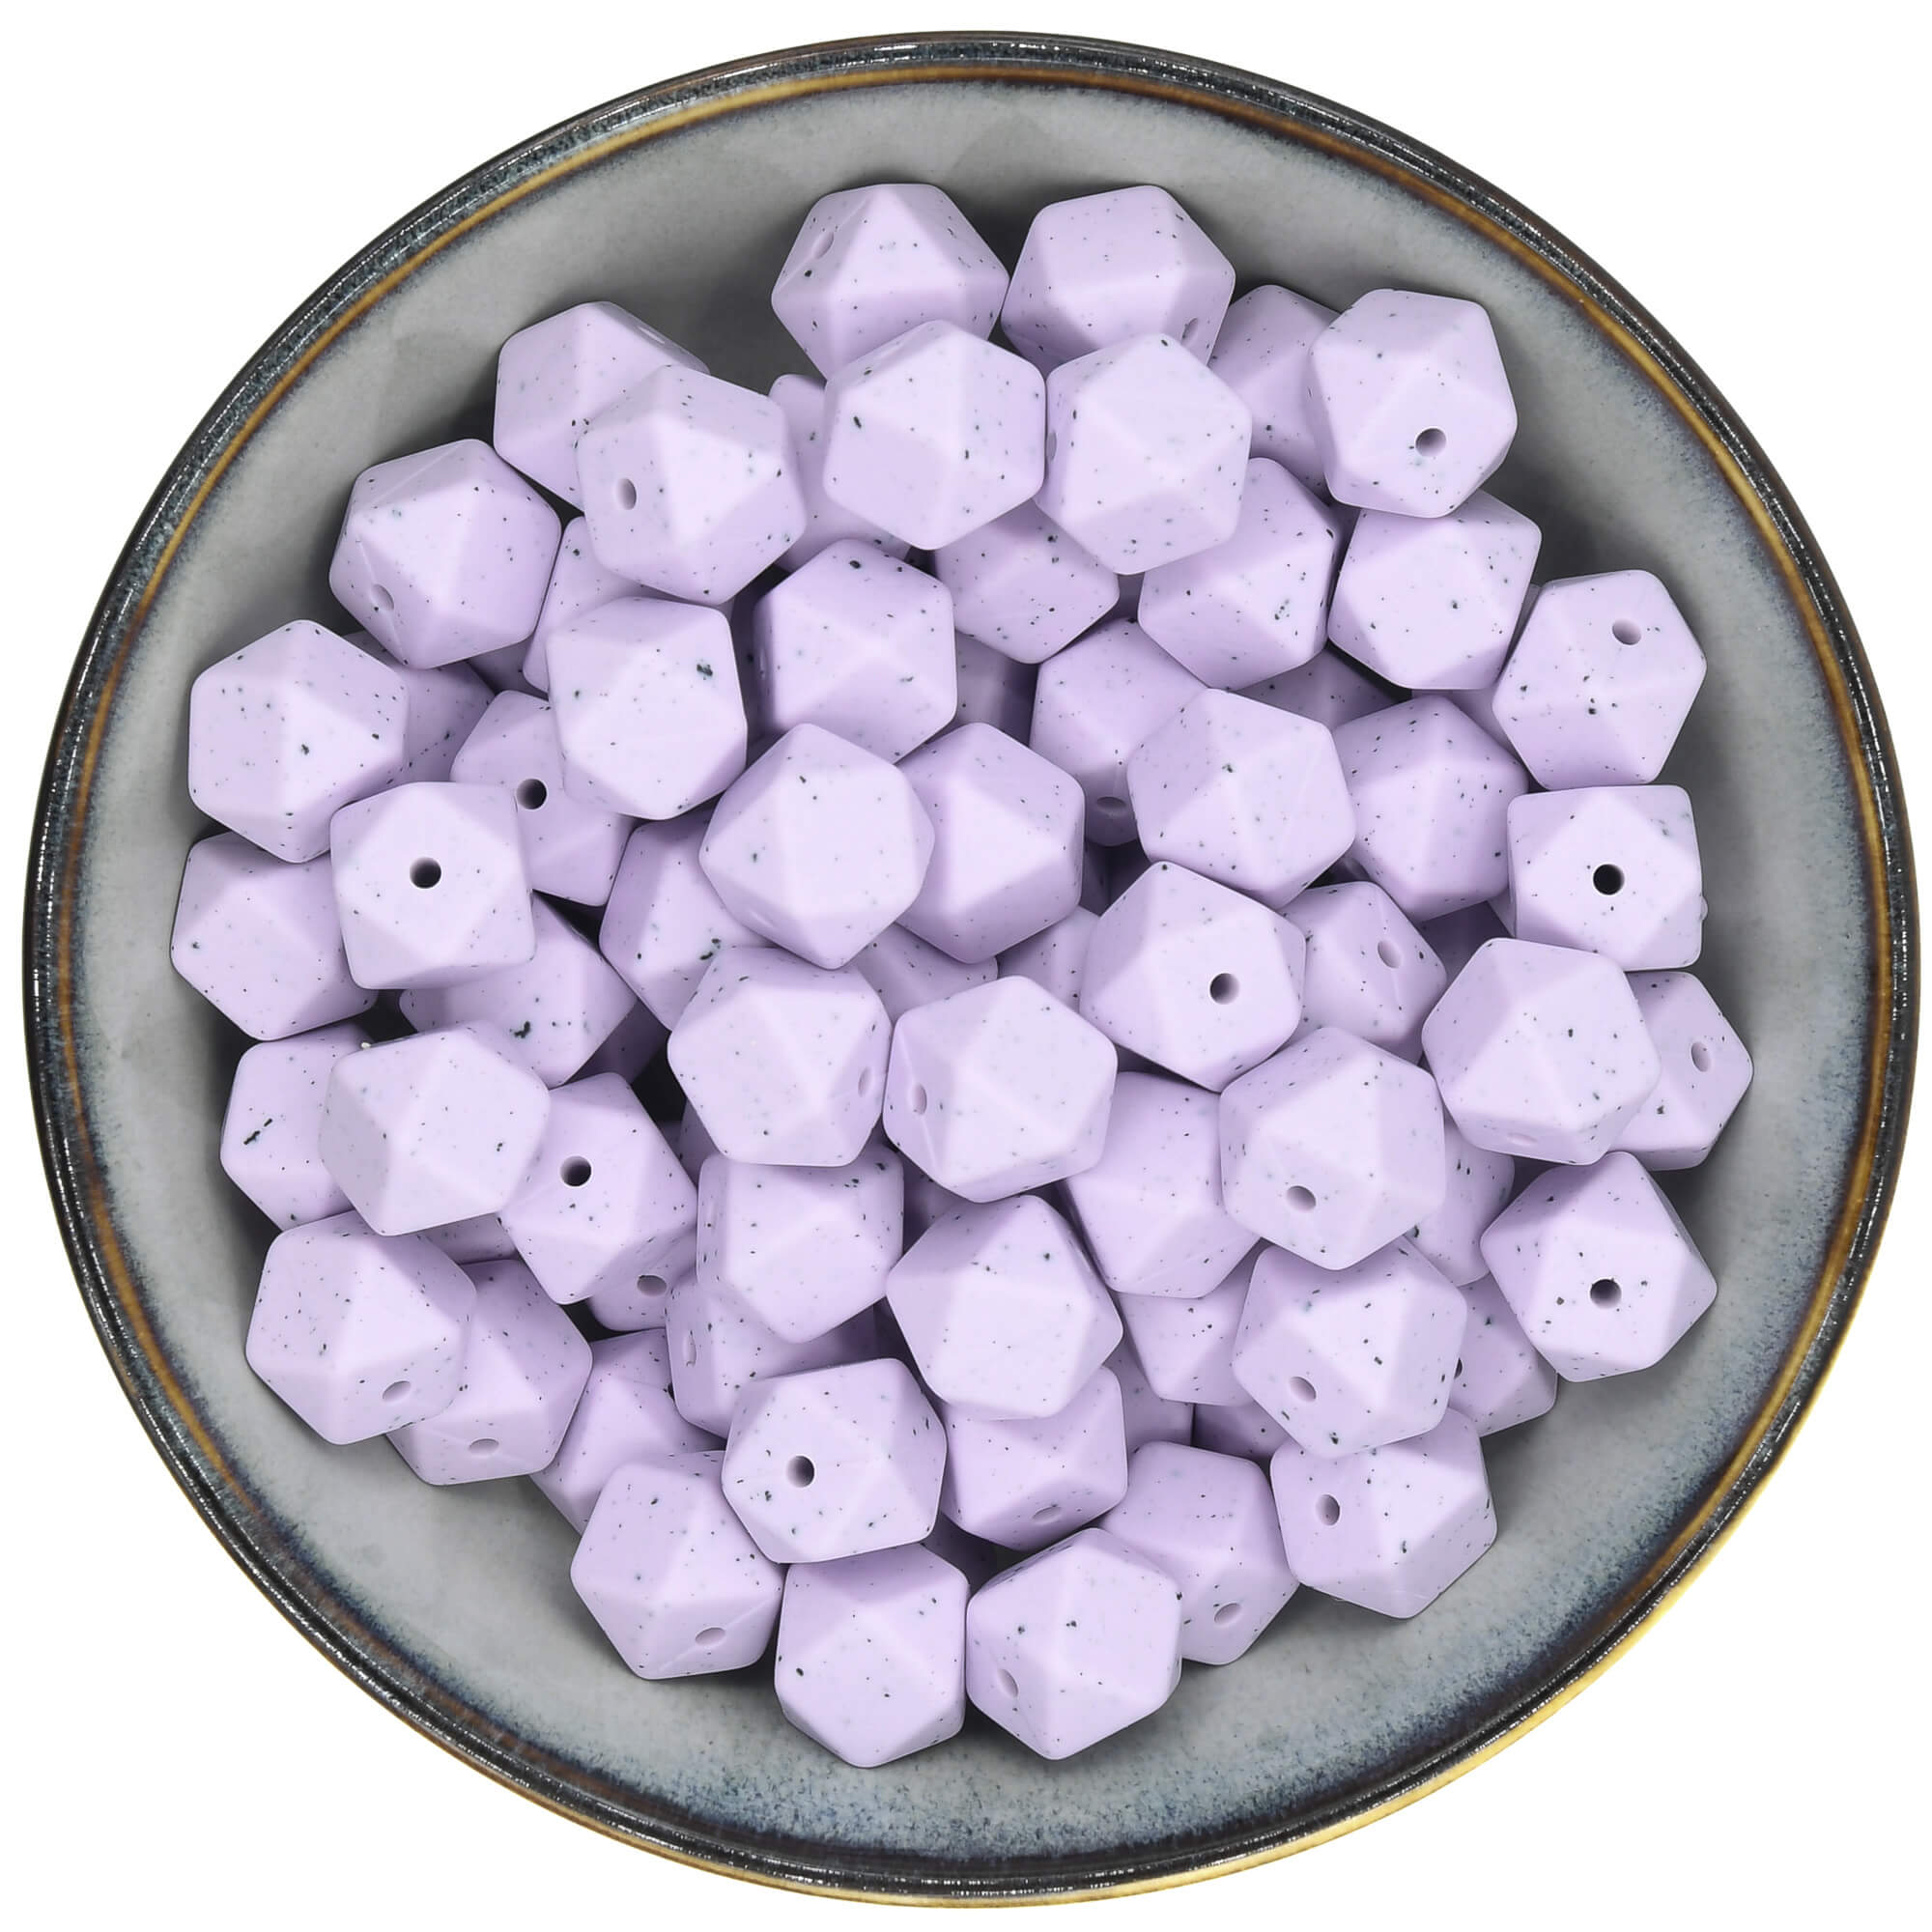 Siliconen kraal Mini-Hexagon van 14 mm in de kleur Poederlila met Spikkels